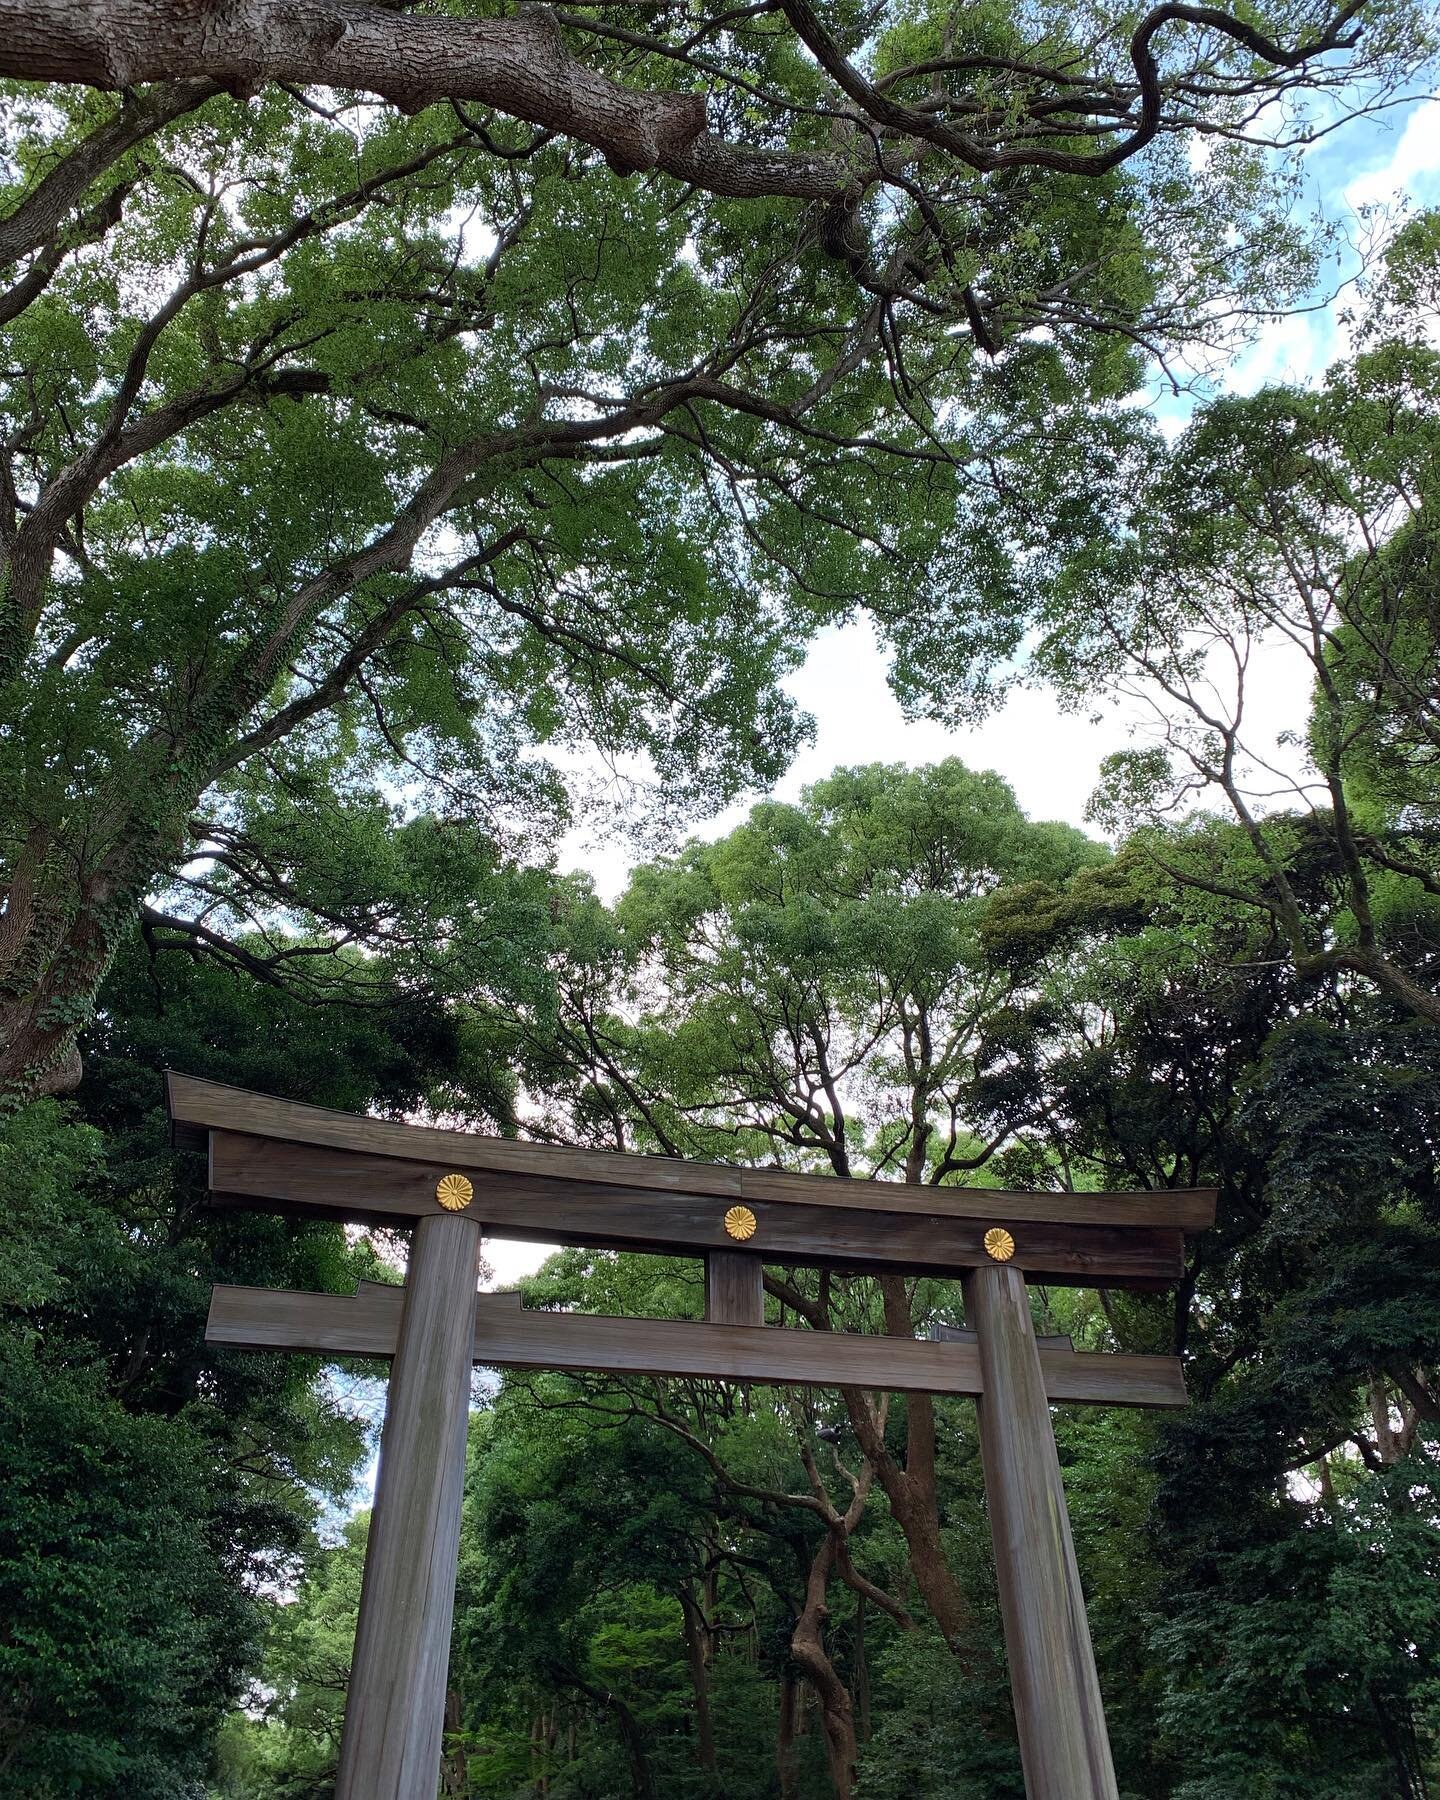 Transitioning from the mundane world to the sacred. #japan #tokyo #shibuya #harajuku #meijijingu #torii #gate #shinto #japanesearchitecture #🇯🇵